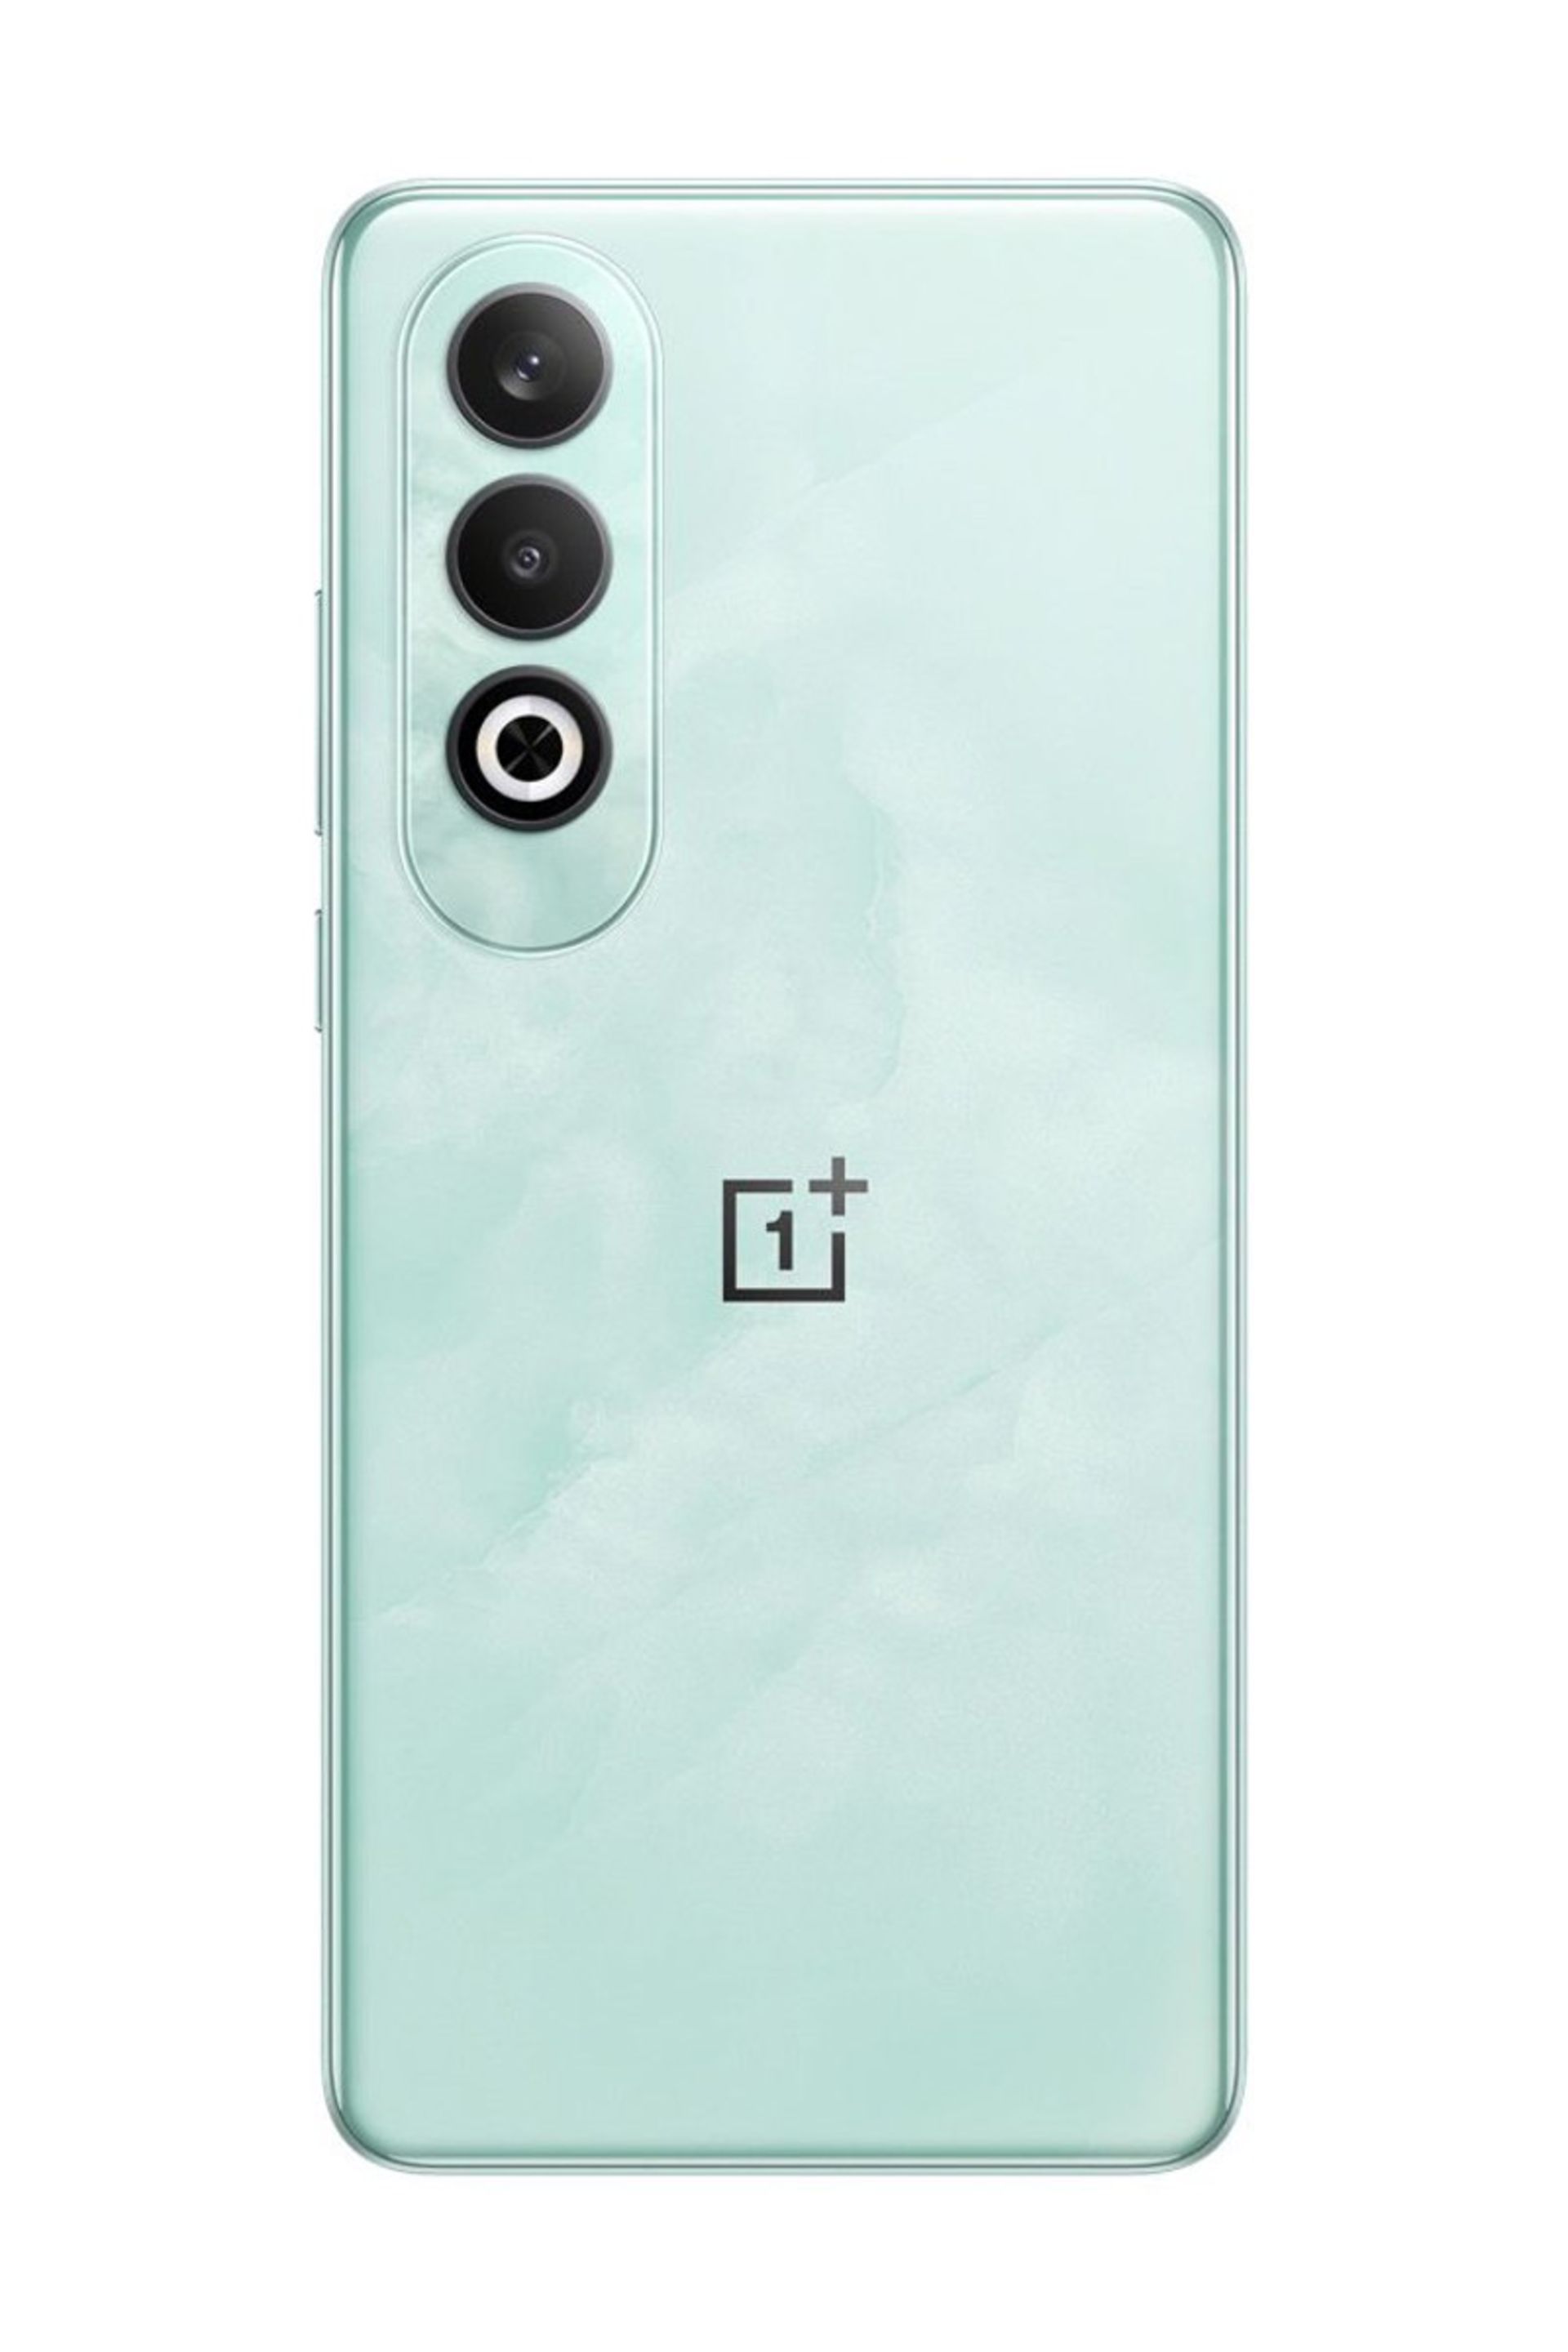 نمایی از بخش پشت بدنه گوشی OnePlus Nord CE4 به رنگ سبز یشمی